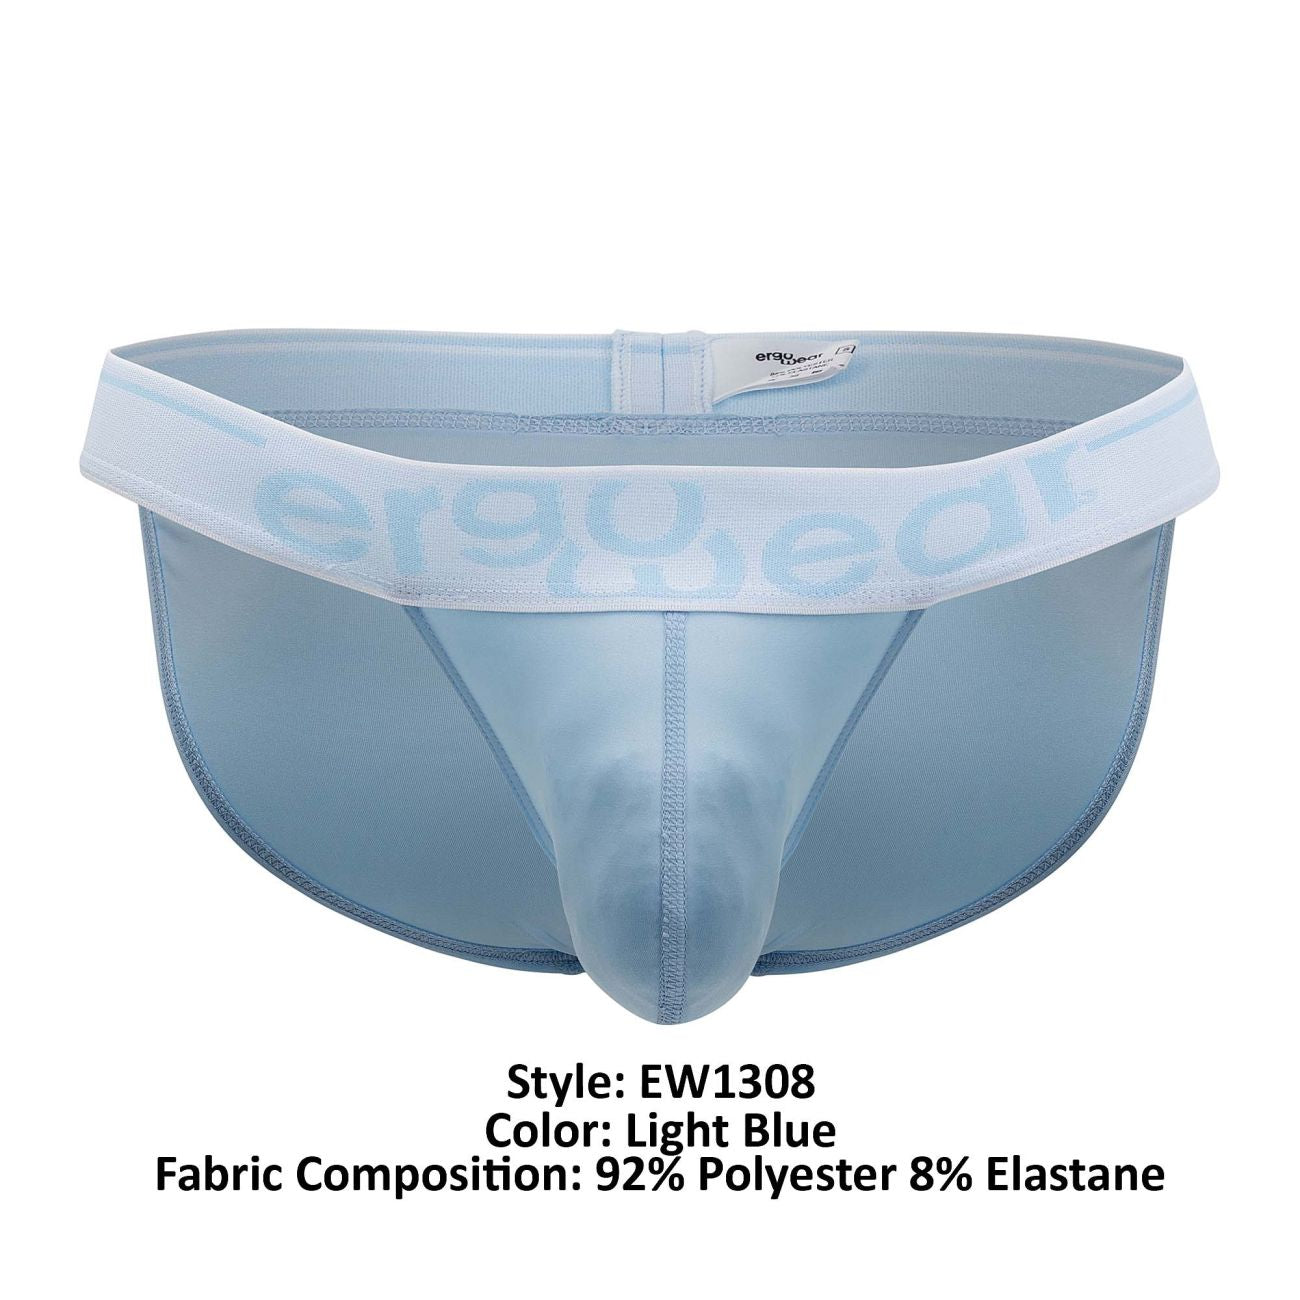 ErgoWear EW1308 MAX SE Bikini Light Blue